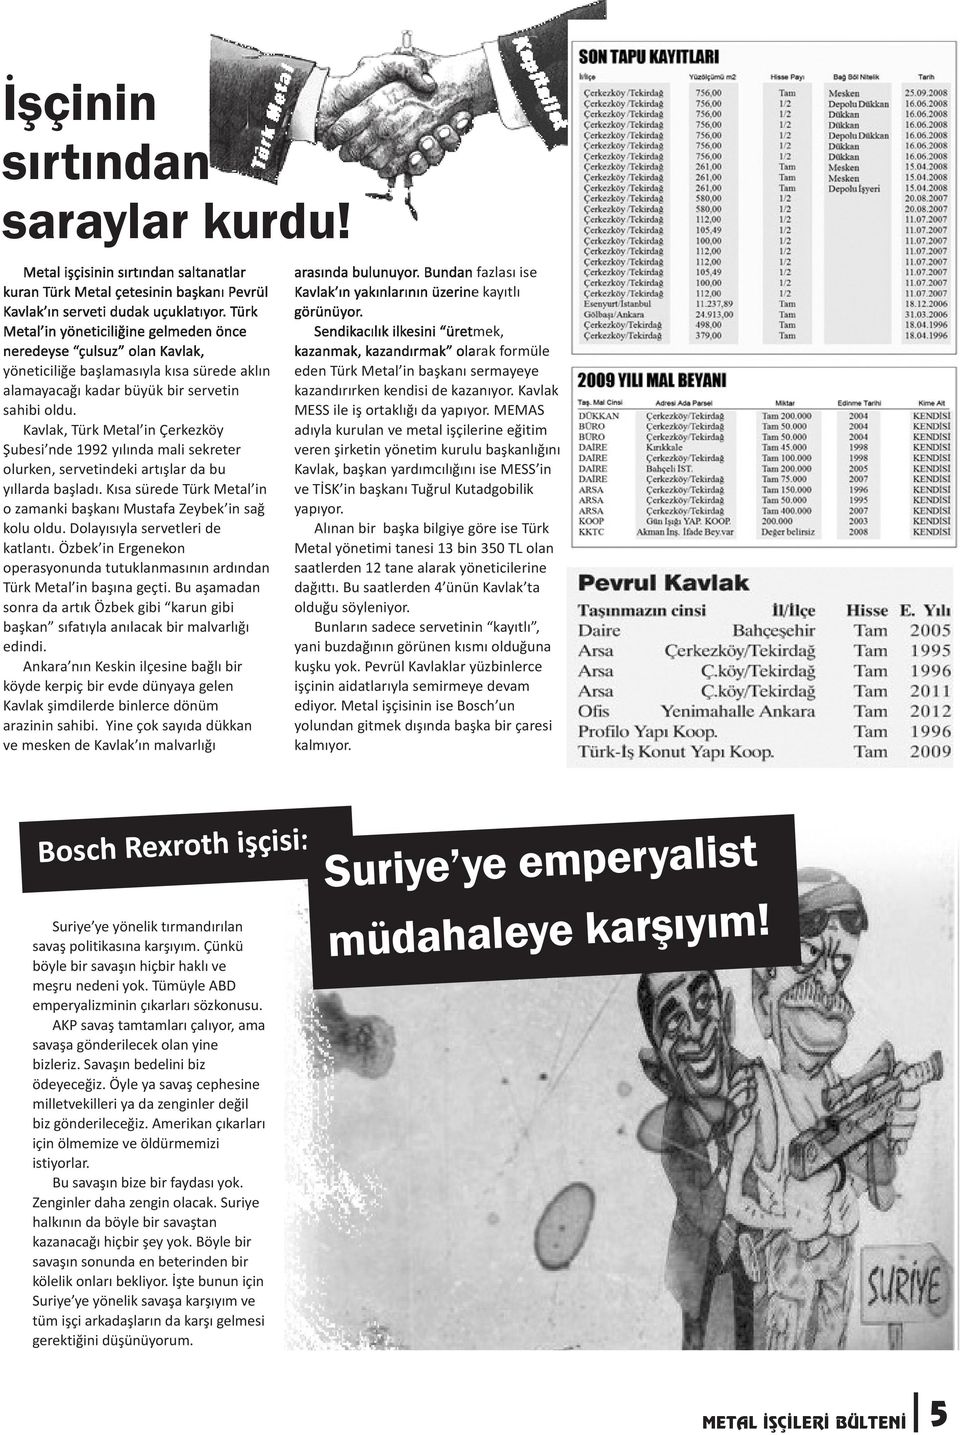 Kavlak, Türk Metal in Çerkezköy Şubesi nde 1992 yılında mali sekreter olurken, servetindeki artışlar da bu yıllarda başladı.